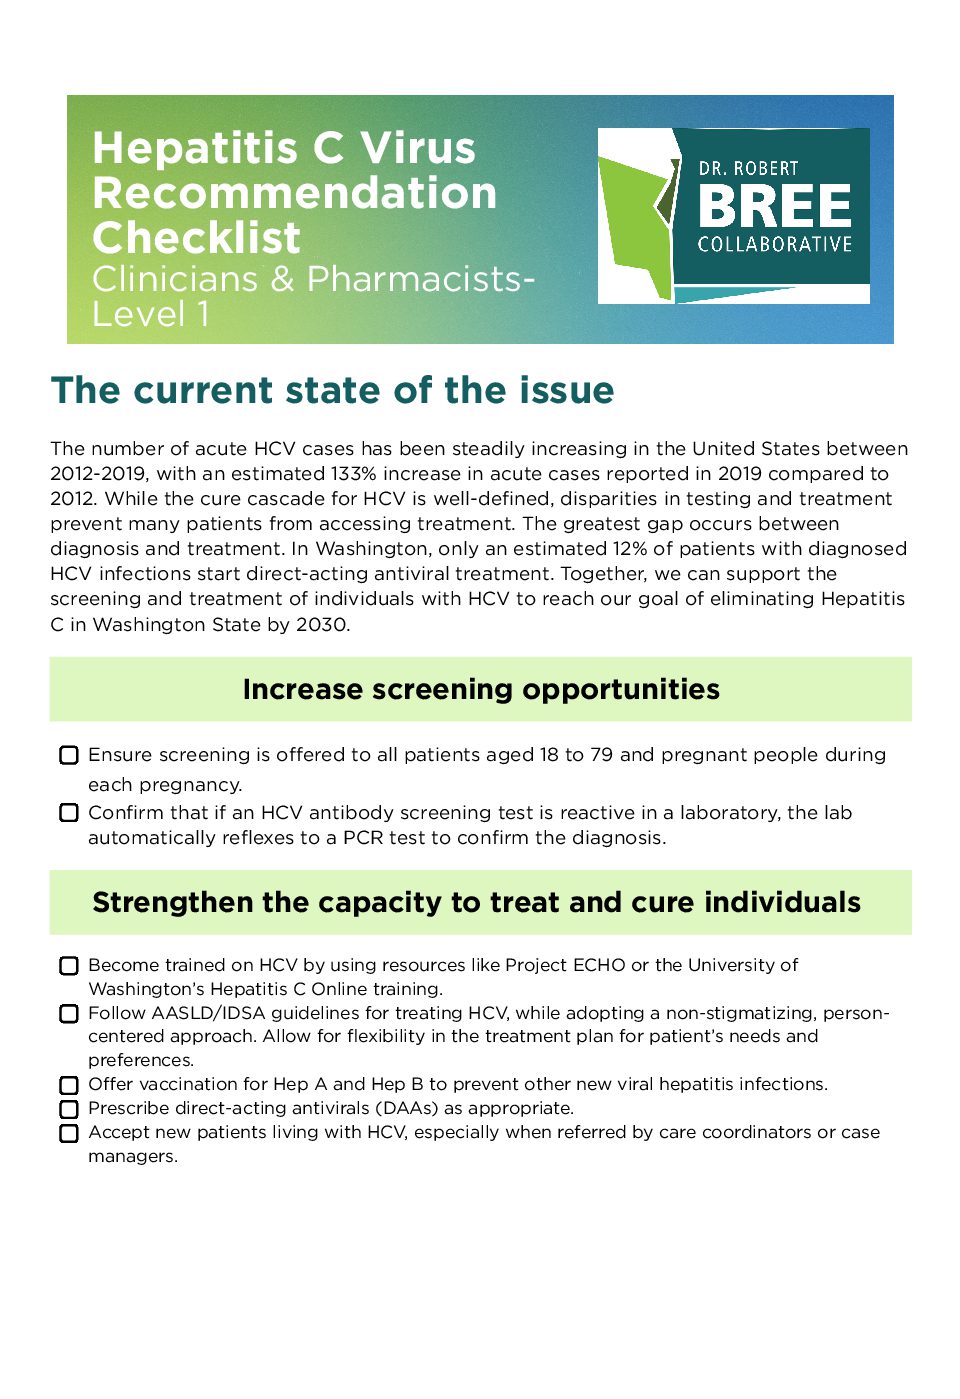 HCV Checklist Clinicians & Pharmacists-Level 1